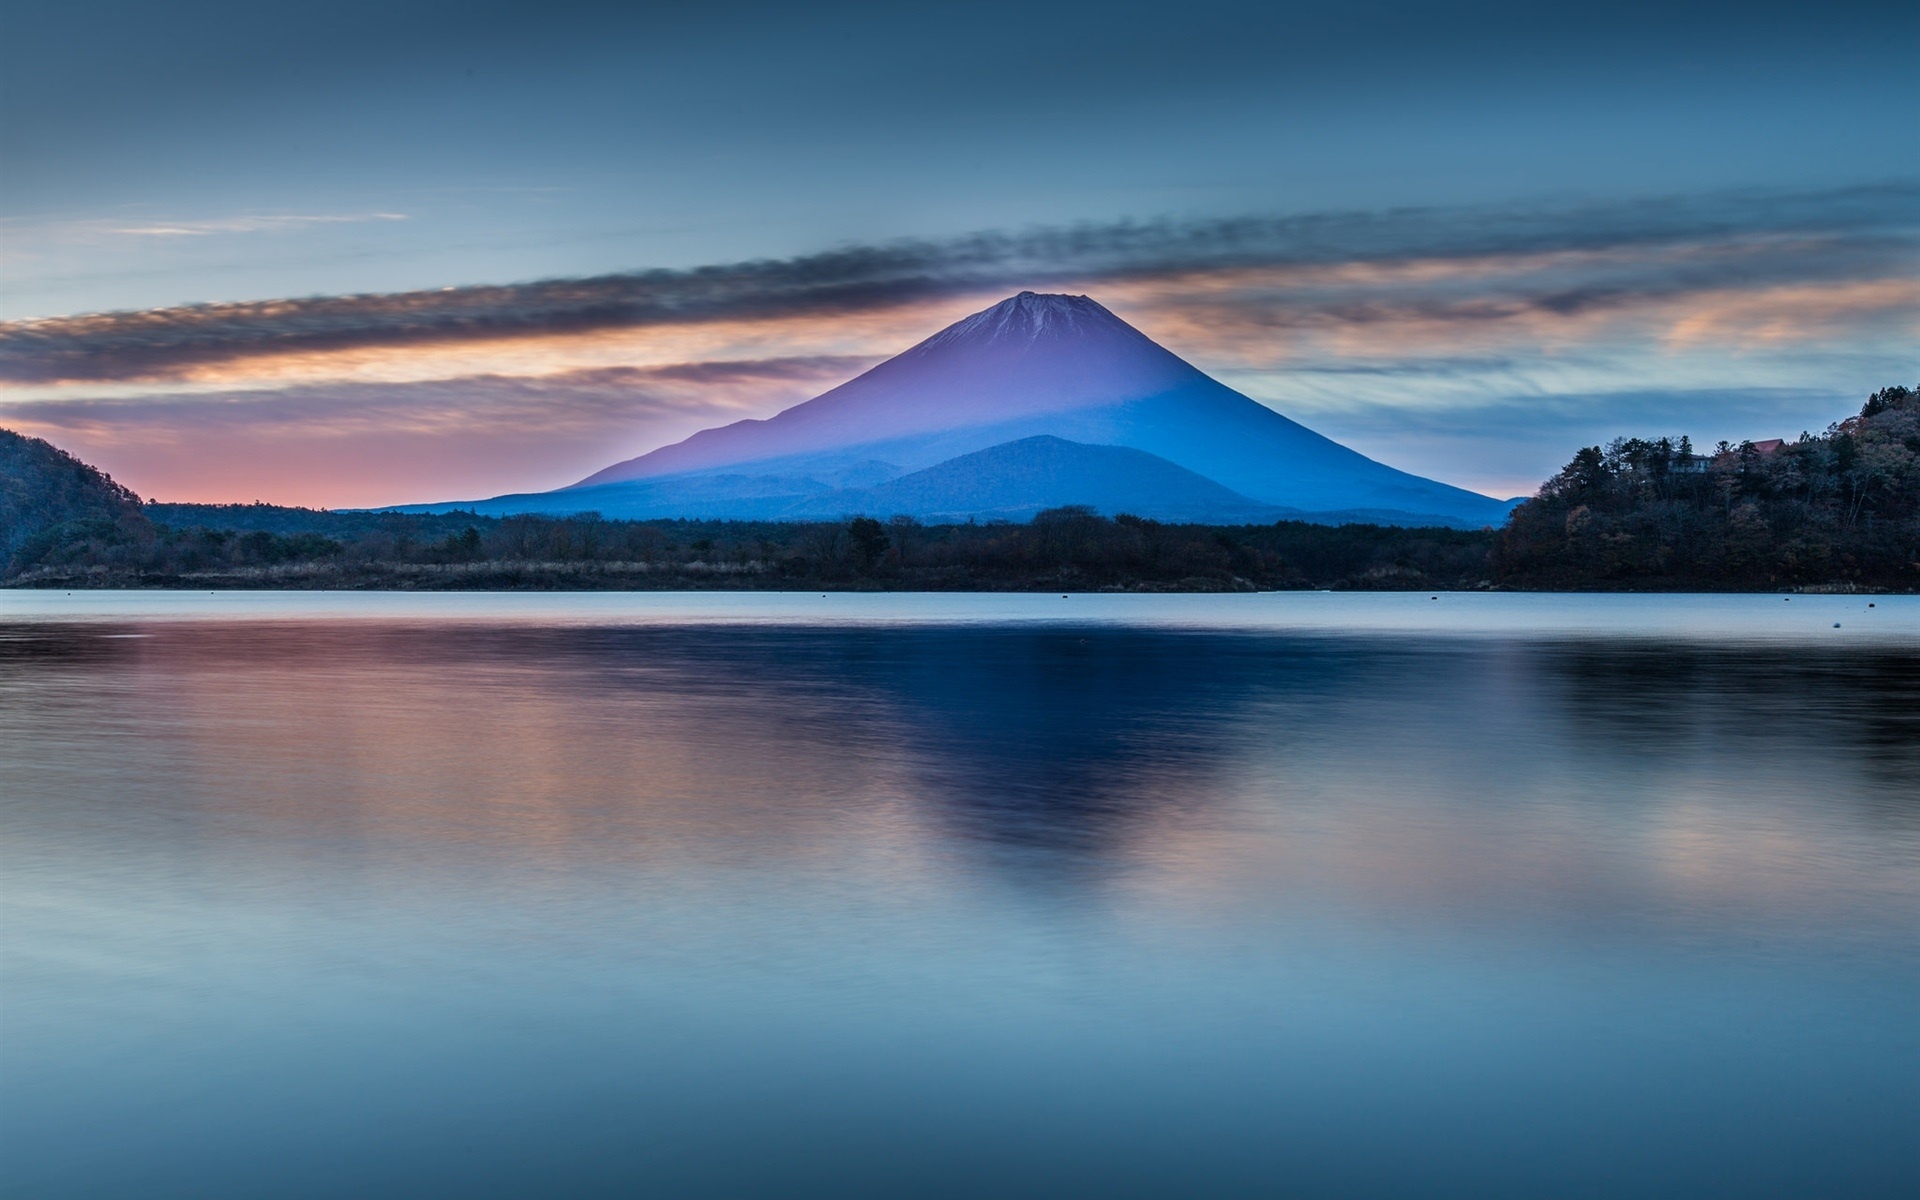 美丽的日本自然风光,富士山,湖,云,黎明壁纸,高清图片,壁纸,自然风景